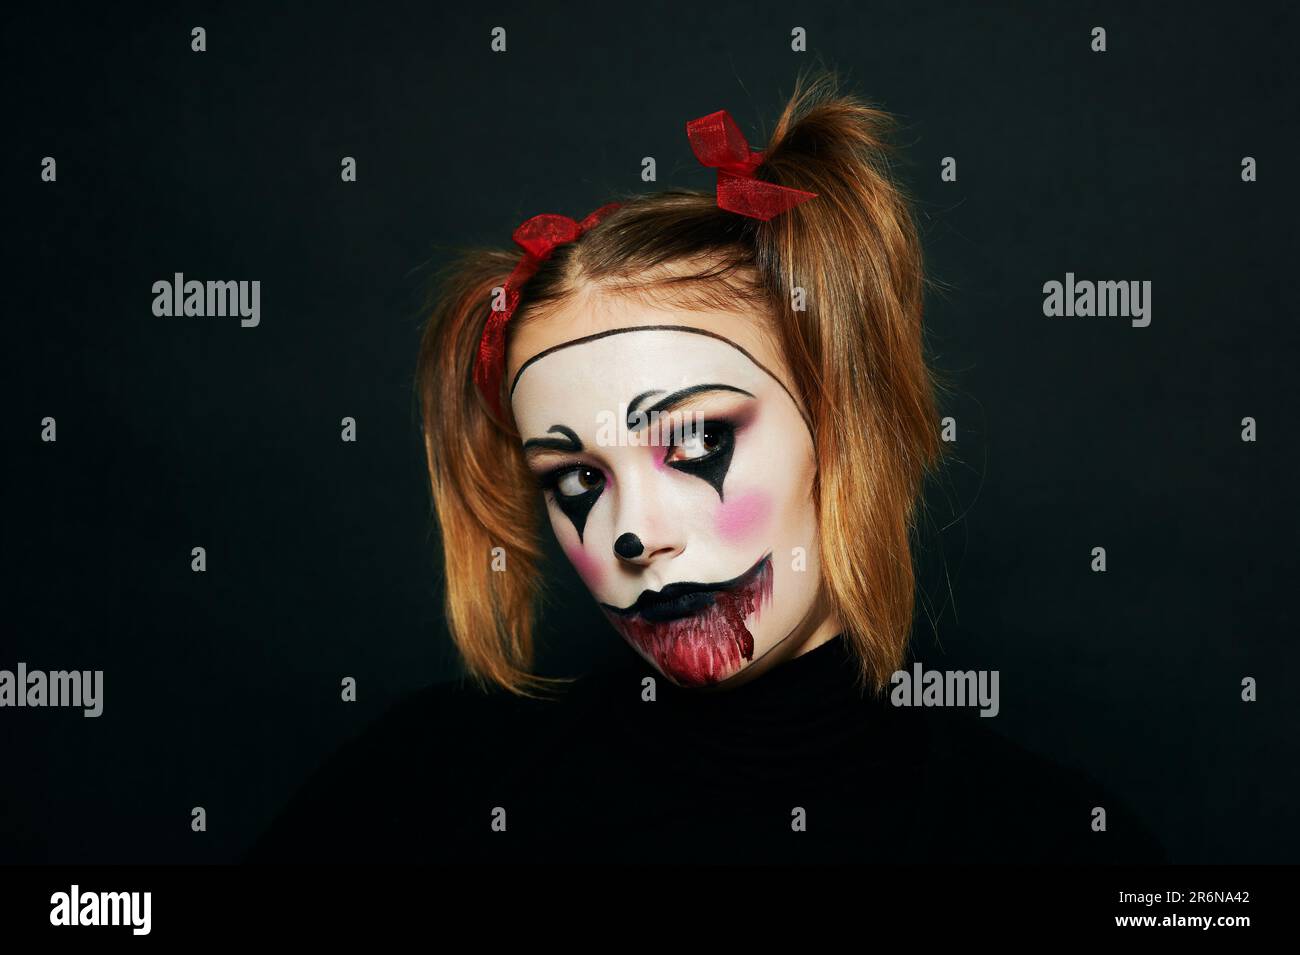 Primo piano ritratto di giovane ragazza adolescente con trucco Halloween, hairstail con due pigtail e nastri rossi, sfondo nero Foto Stock